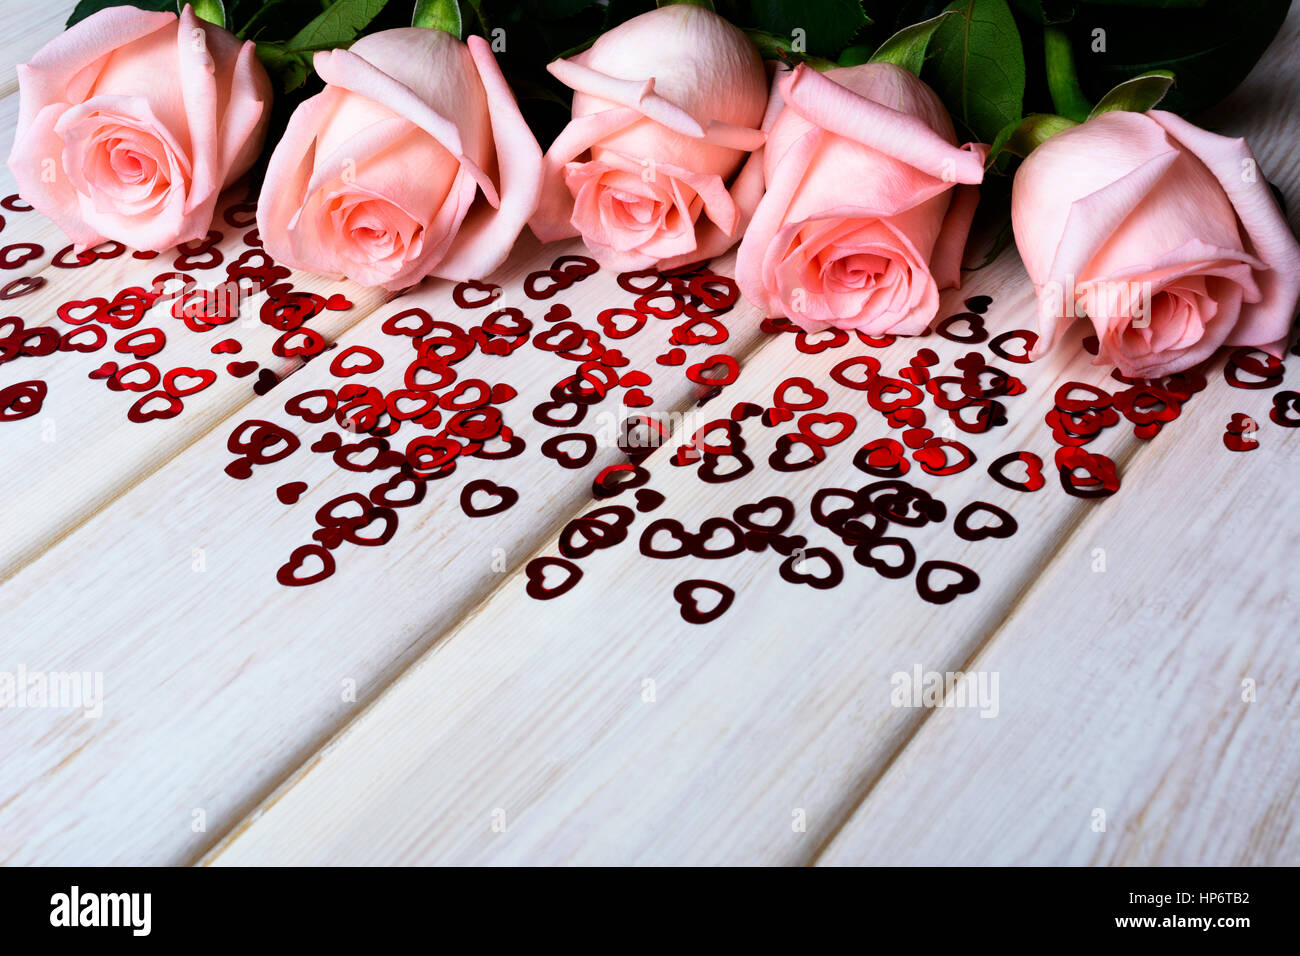 Verlieben Sie sich in Liebe Konzept mit blass rosa Rosen und kleinen roten Herzen. Elegante Hochzeitseinladung. Valentinstag Grußkarten-Hintergrund. Kopieren Sie Raum. Stockfoto